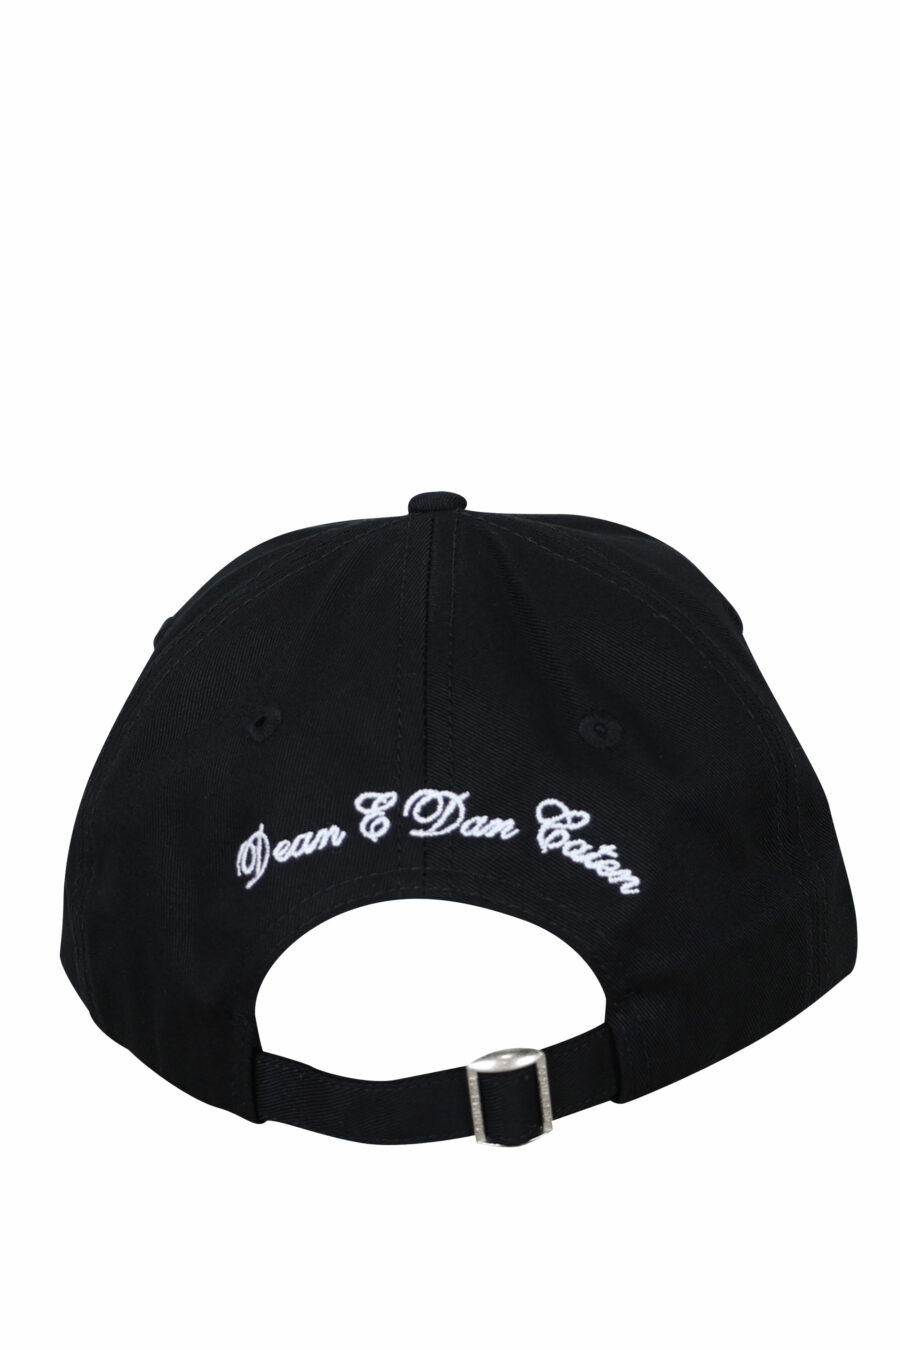 Black cap with "icon" double logo - 8055777217672 1